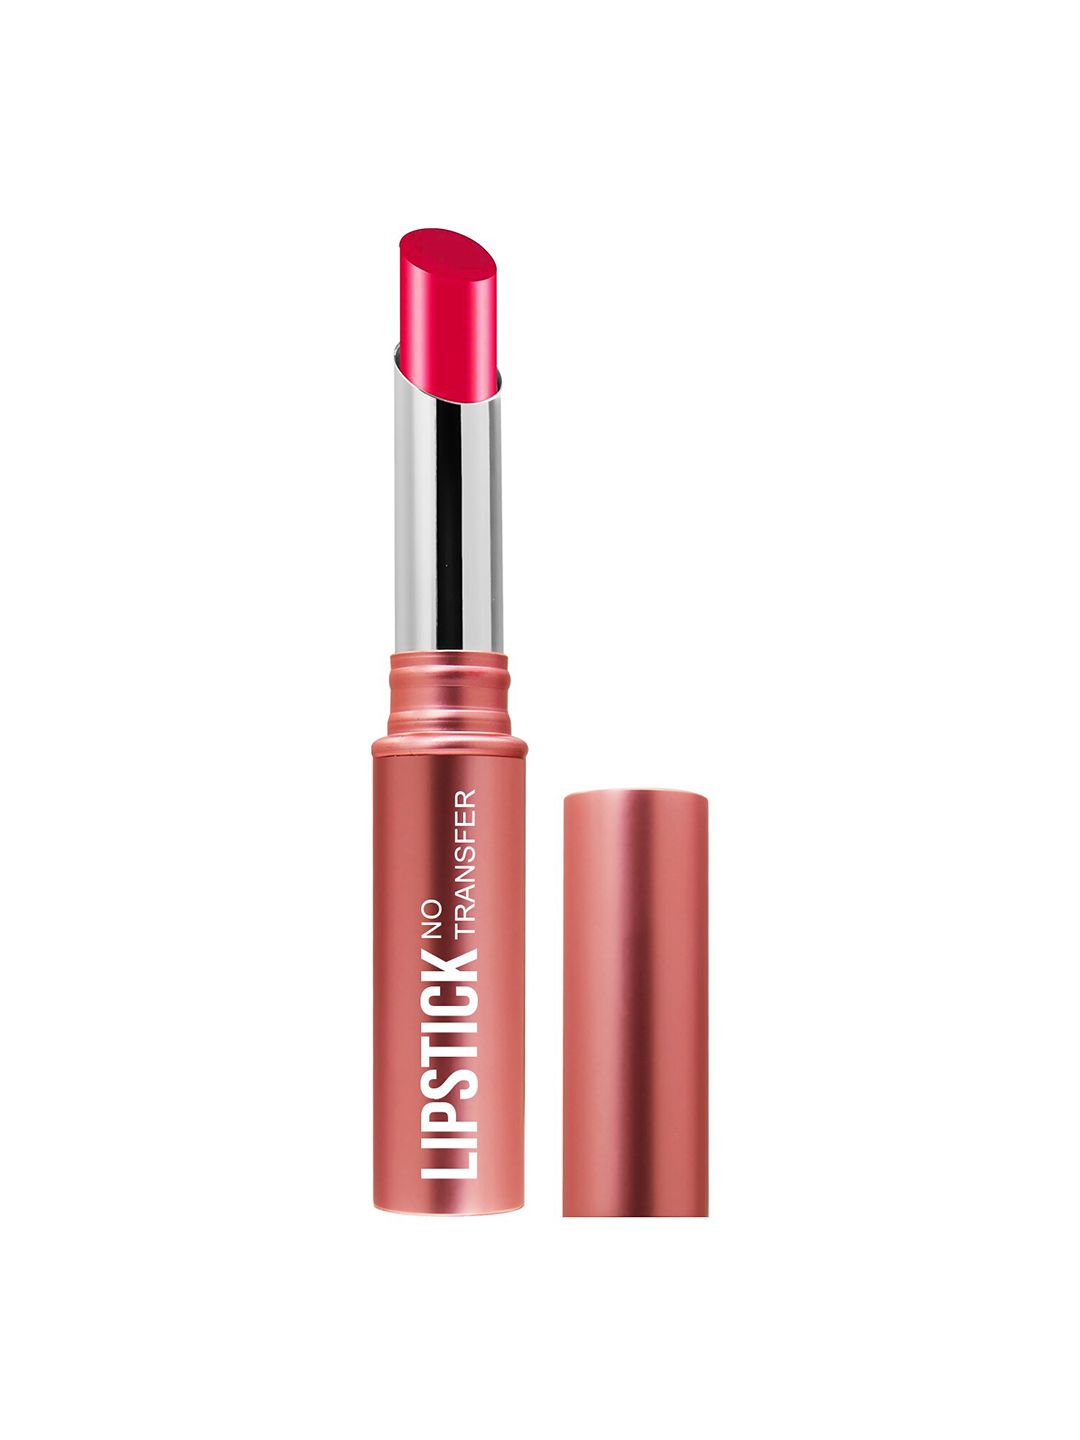 Magic Colour No Transfer Matte Lipstick - Pretty Pink 04 Price in India